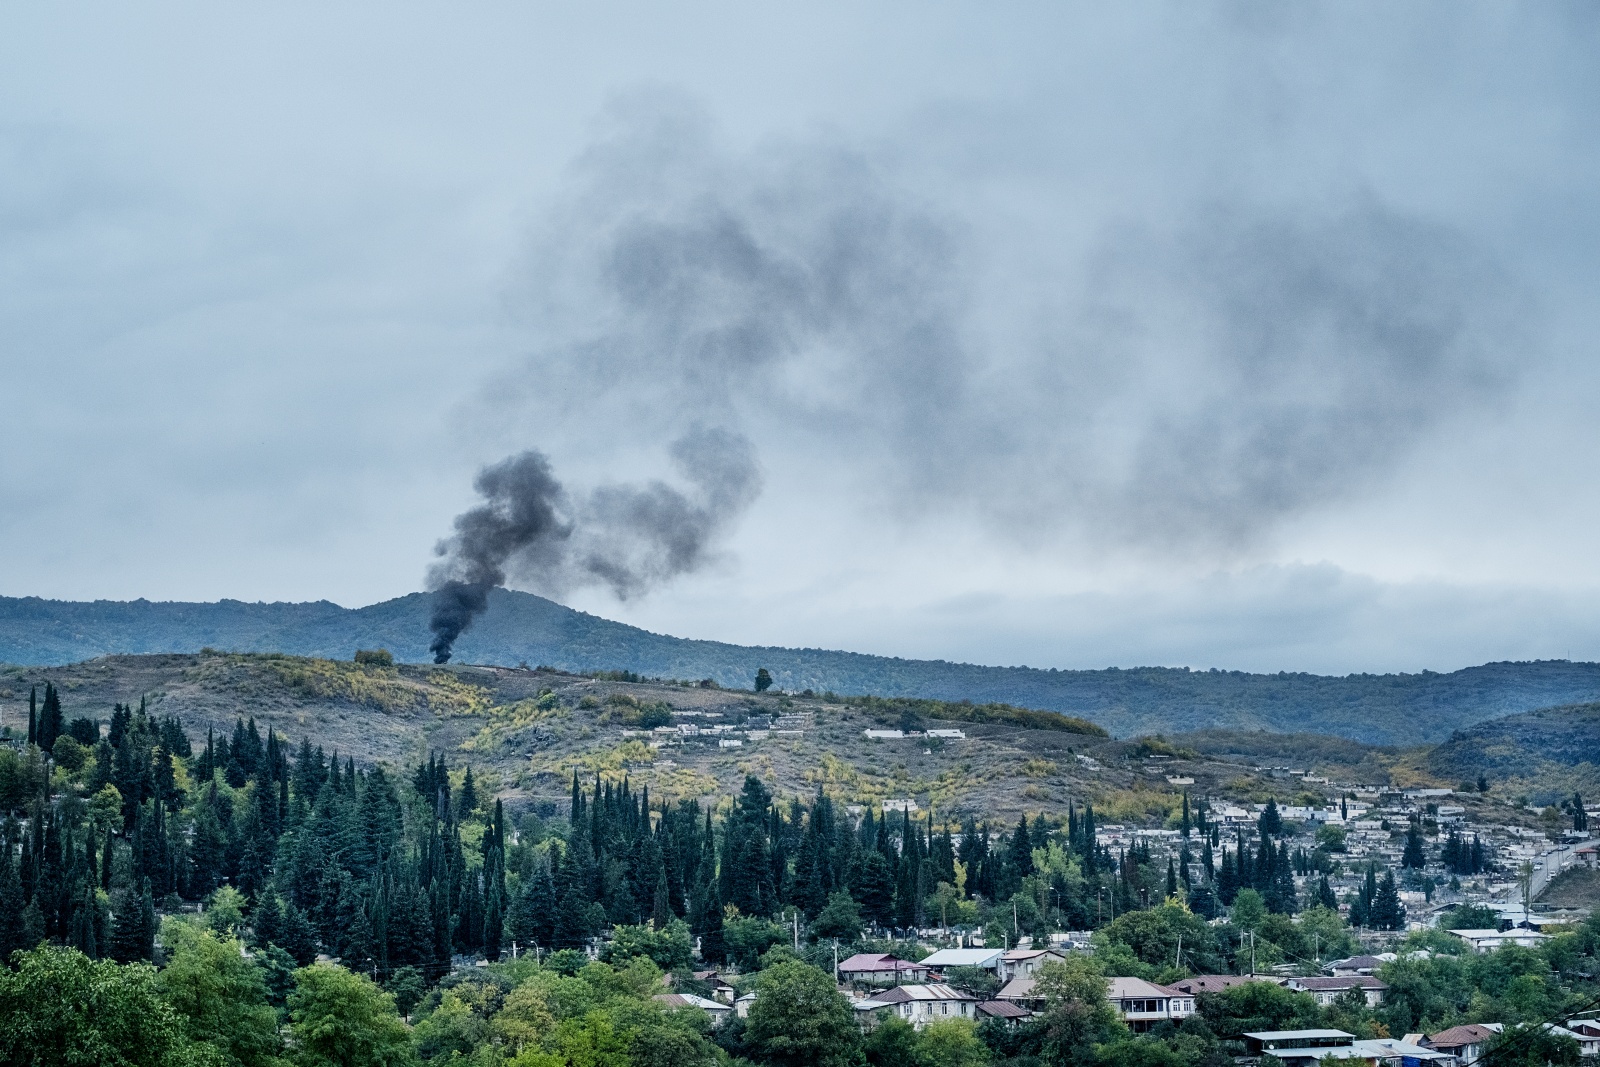 SOTTO ASSEDIO. Stepanakert (Repubblica dell' Artsakh), 7 ottobre 2020 - Una colonna di fumo si leva dai sobborghi di Stepanakert dopo un raid aereo. Per 44 giorni la città è stata bombardata notte e giorno dall'Azerbaijan con il supporto militare dalla Turchia. L'offensiva, iniziata il 27 settembre 2020, è terminata il 9 novembre 2020 con il cessate il fuoco mediato dalla Russia. Da allora l'Azerbaijan ha ripetutamente violato l'accordo